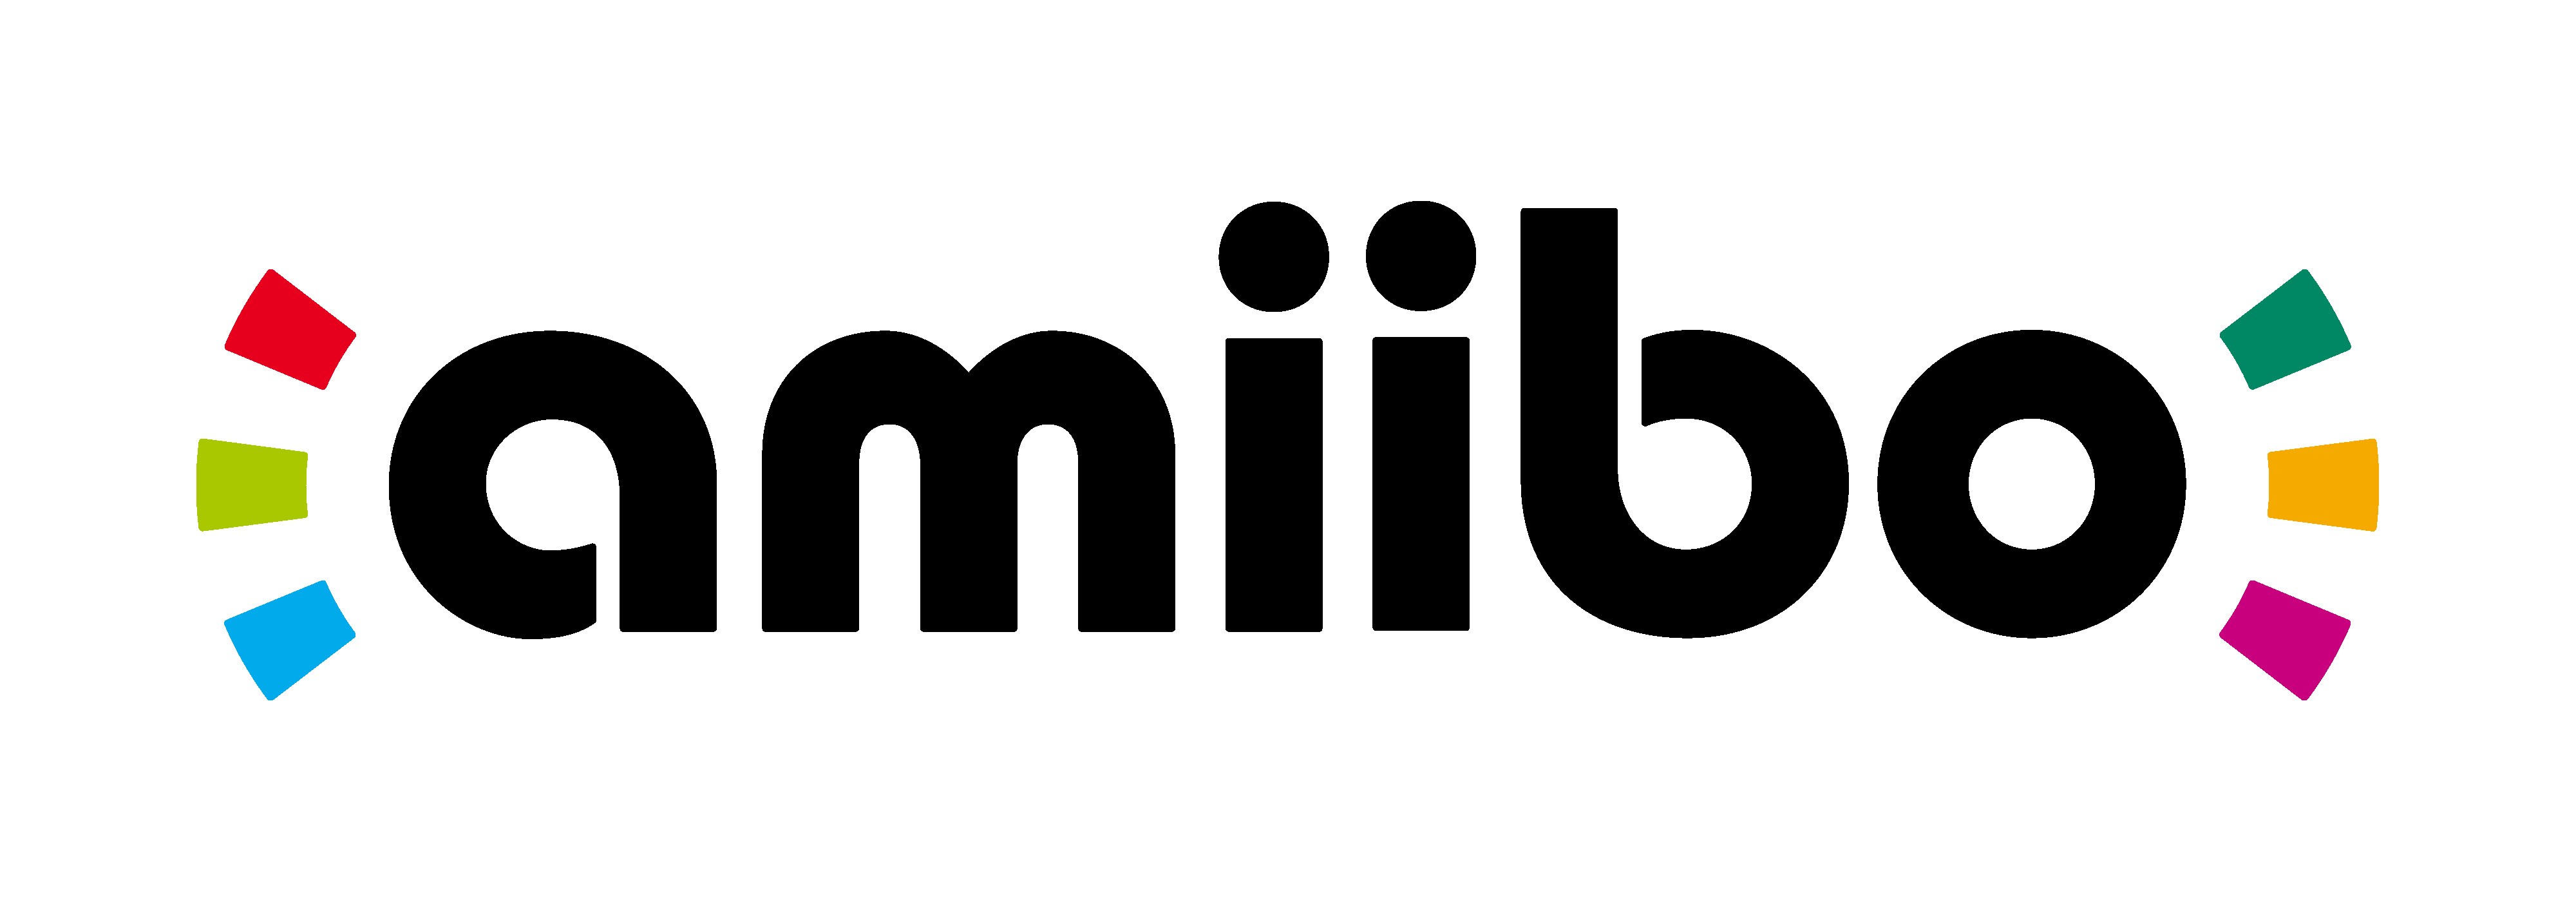 amiibo_logo_E3